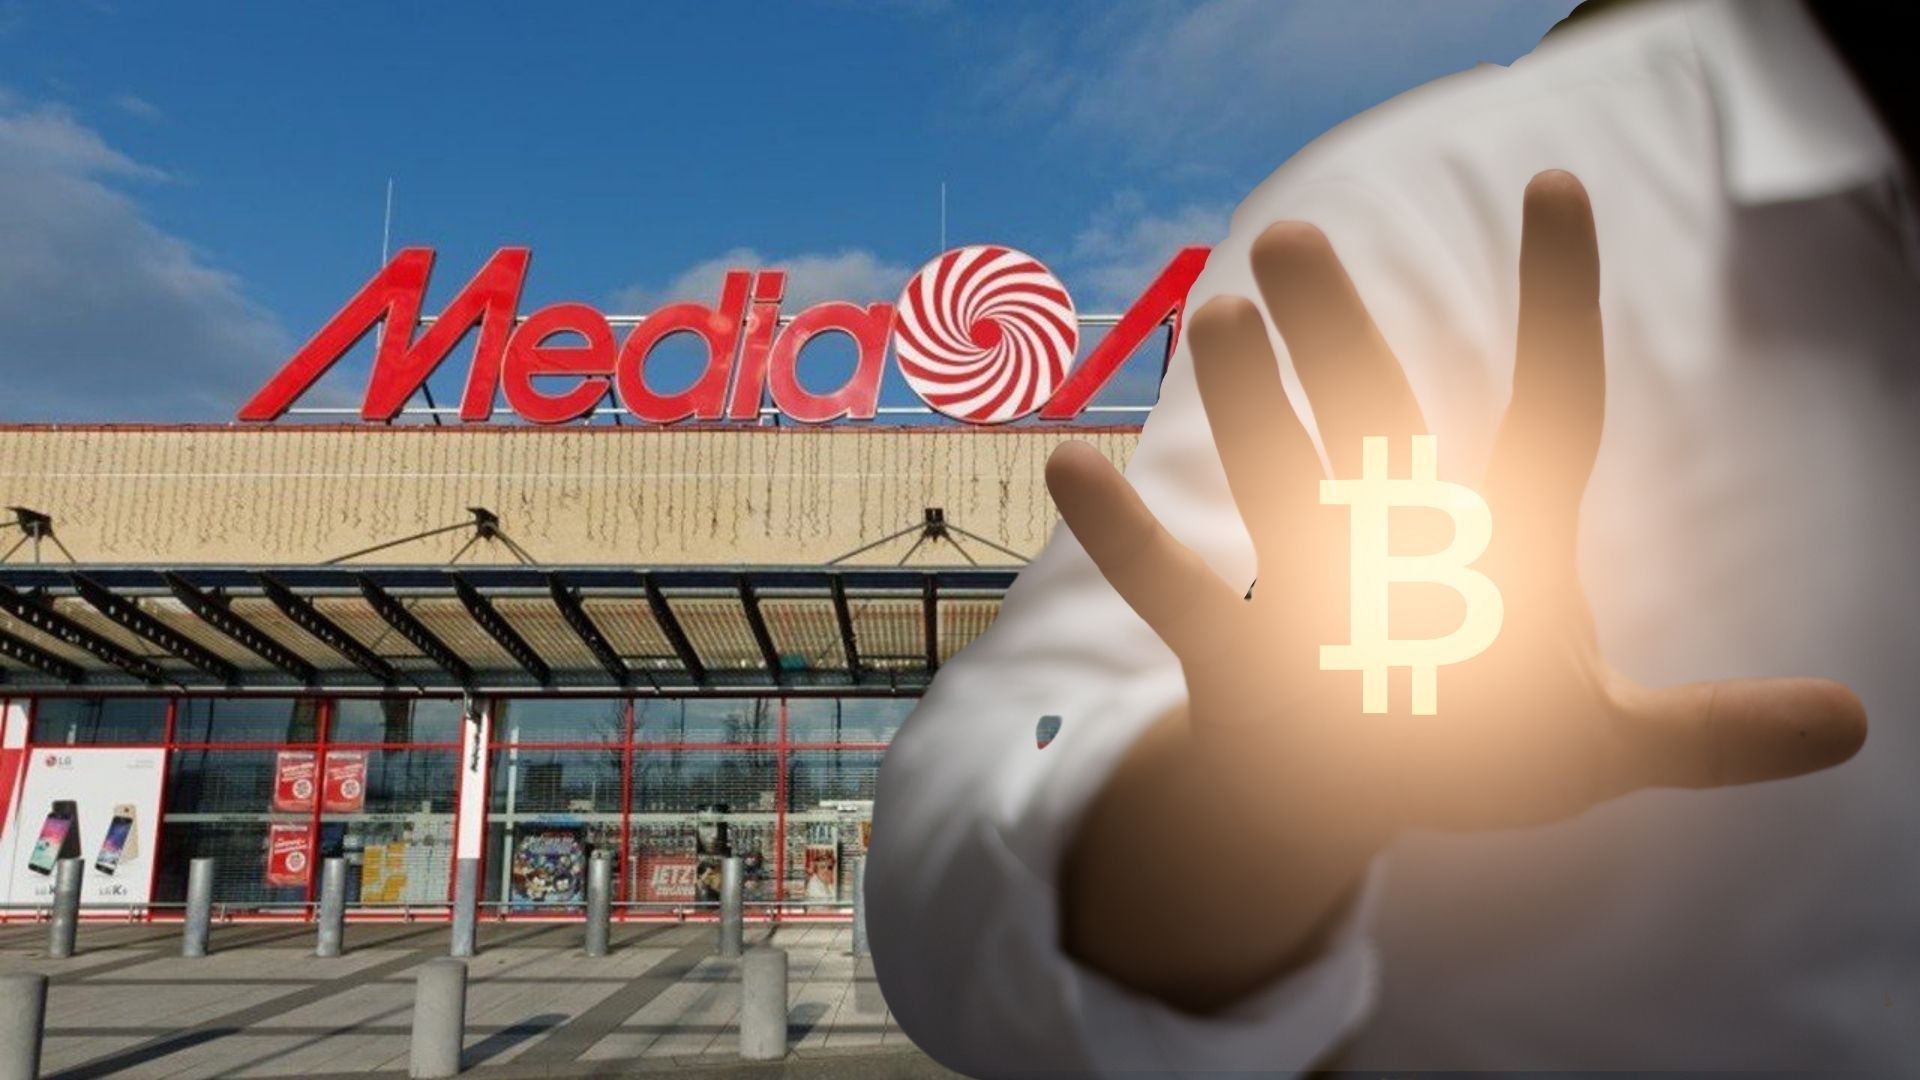 Nhà bán lẻ lớn nhất Châu Âu tiến hành lắp đặt máy ATM Bitcoin